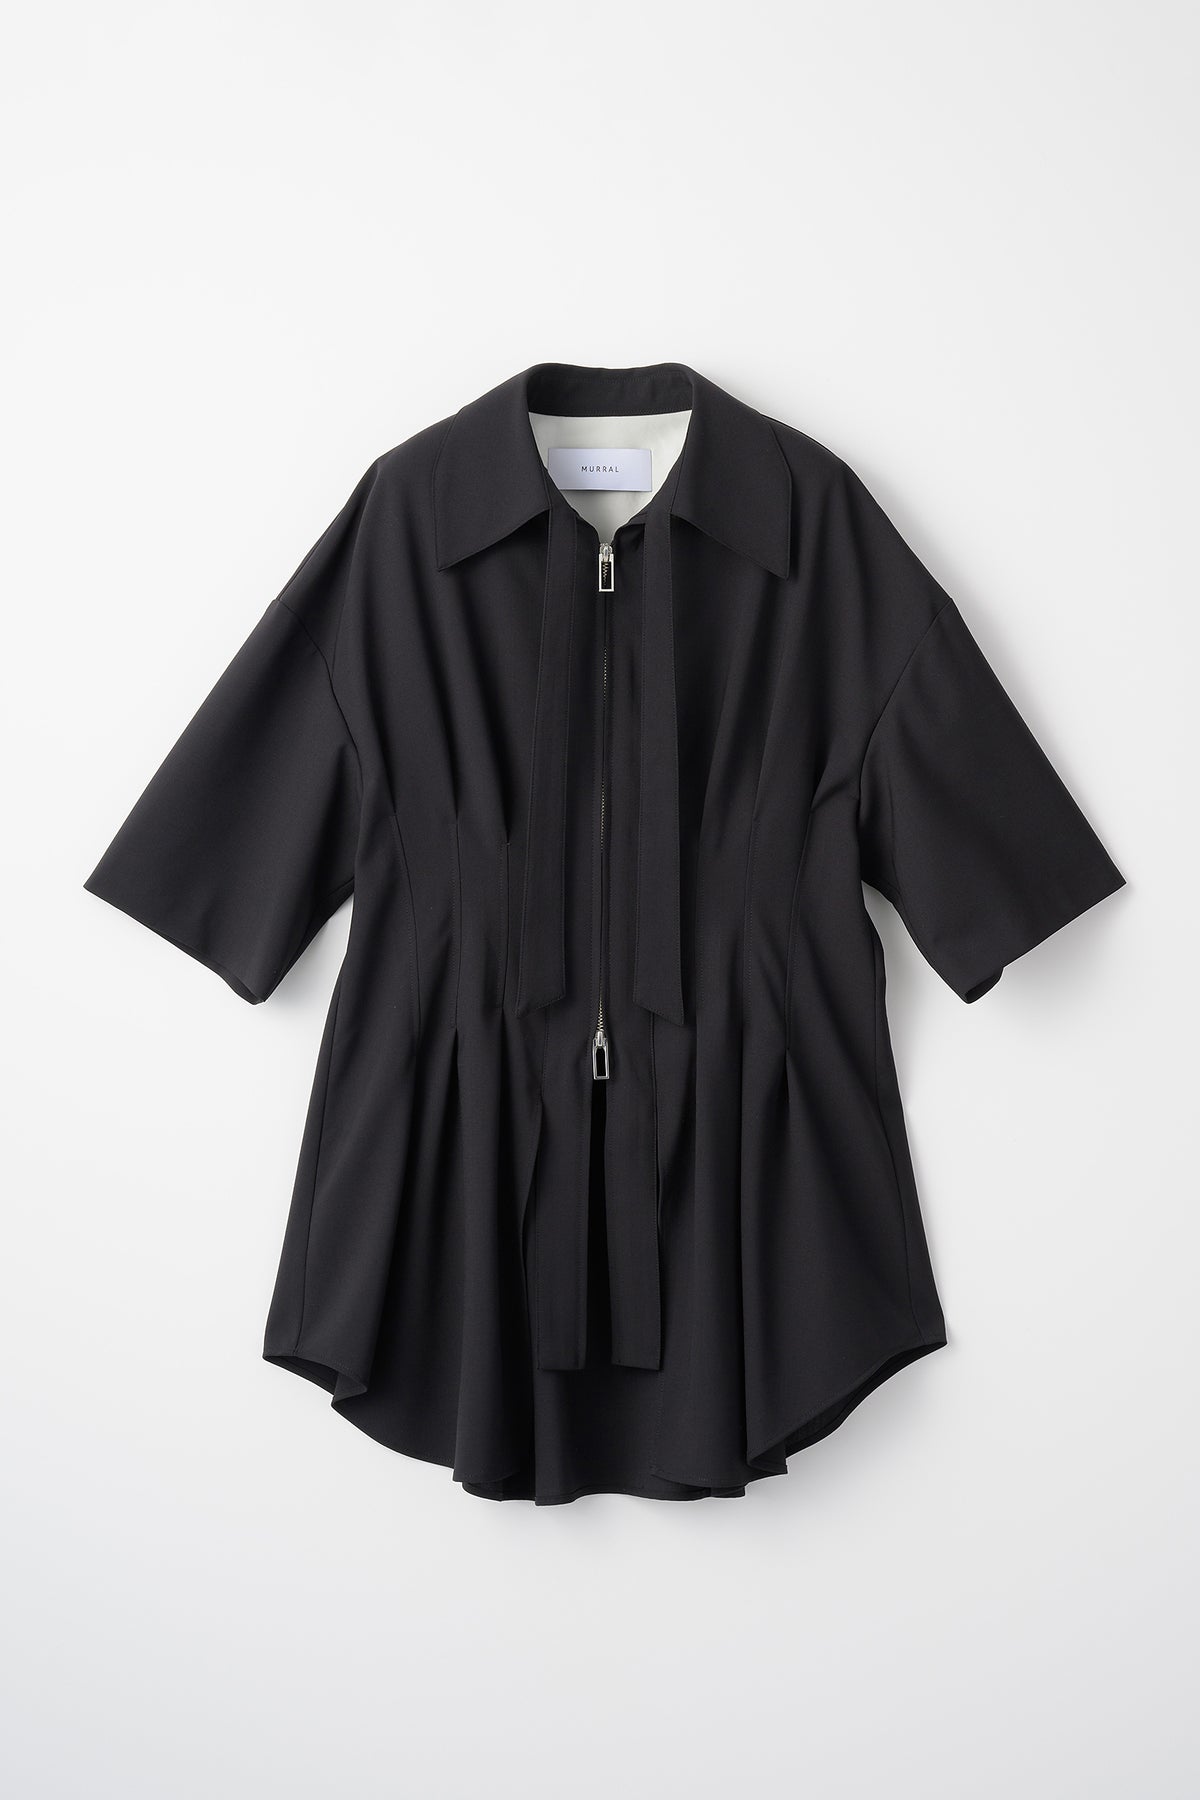 Contrast zip shirt (Black)